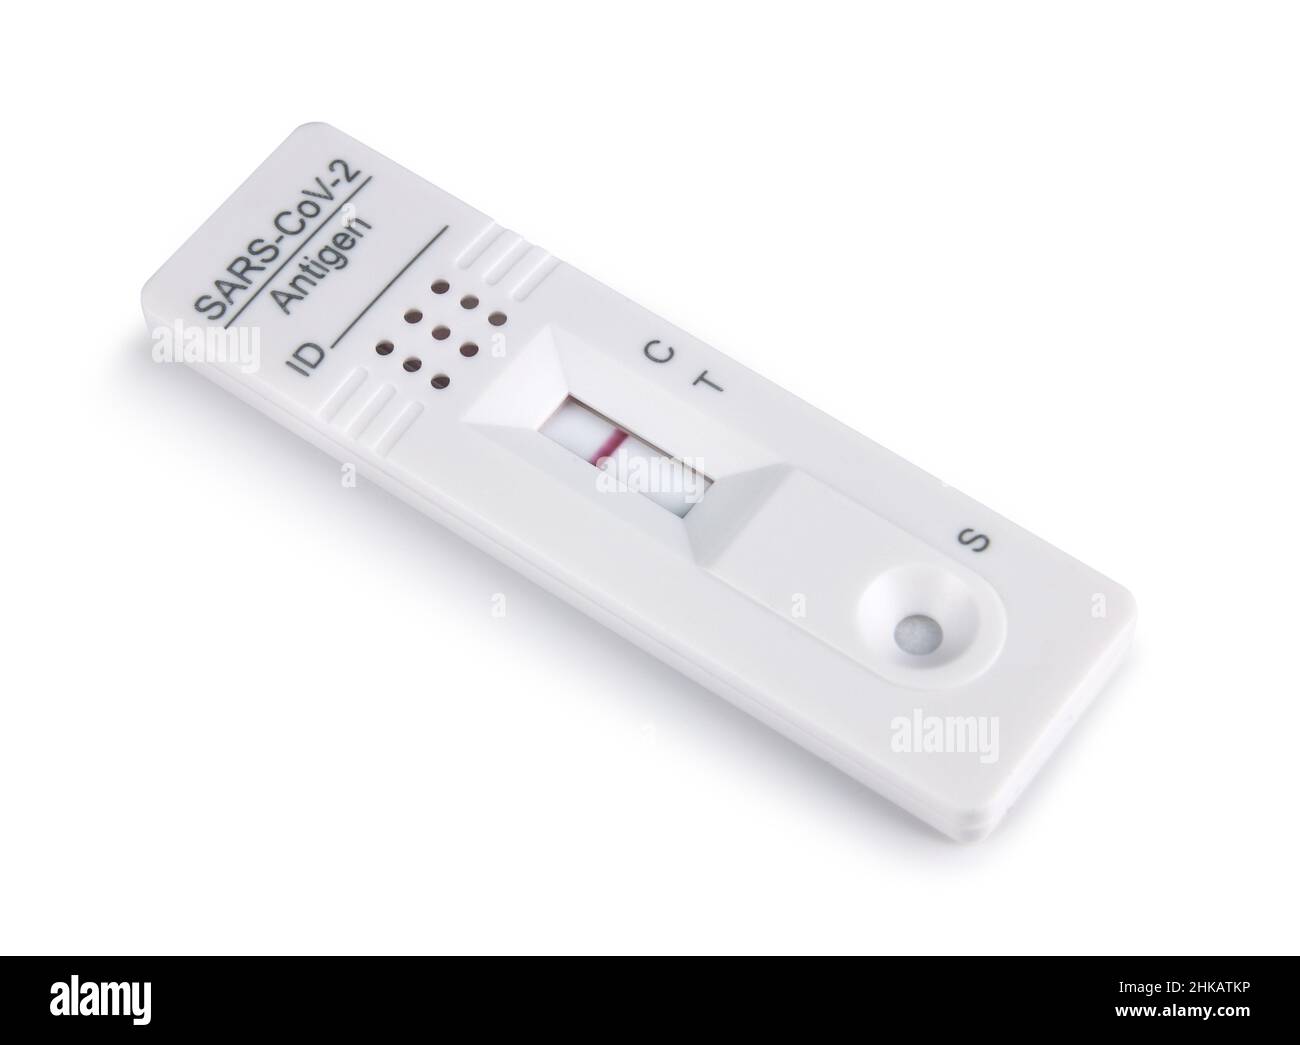 Cassette de kit de test d'antigène du virus corona Covid-19 montrant un résultat négatif, isolée sur fond blanc Banque D'Images